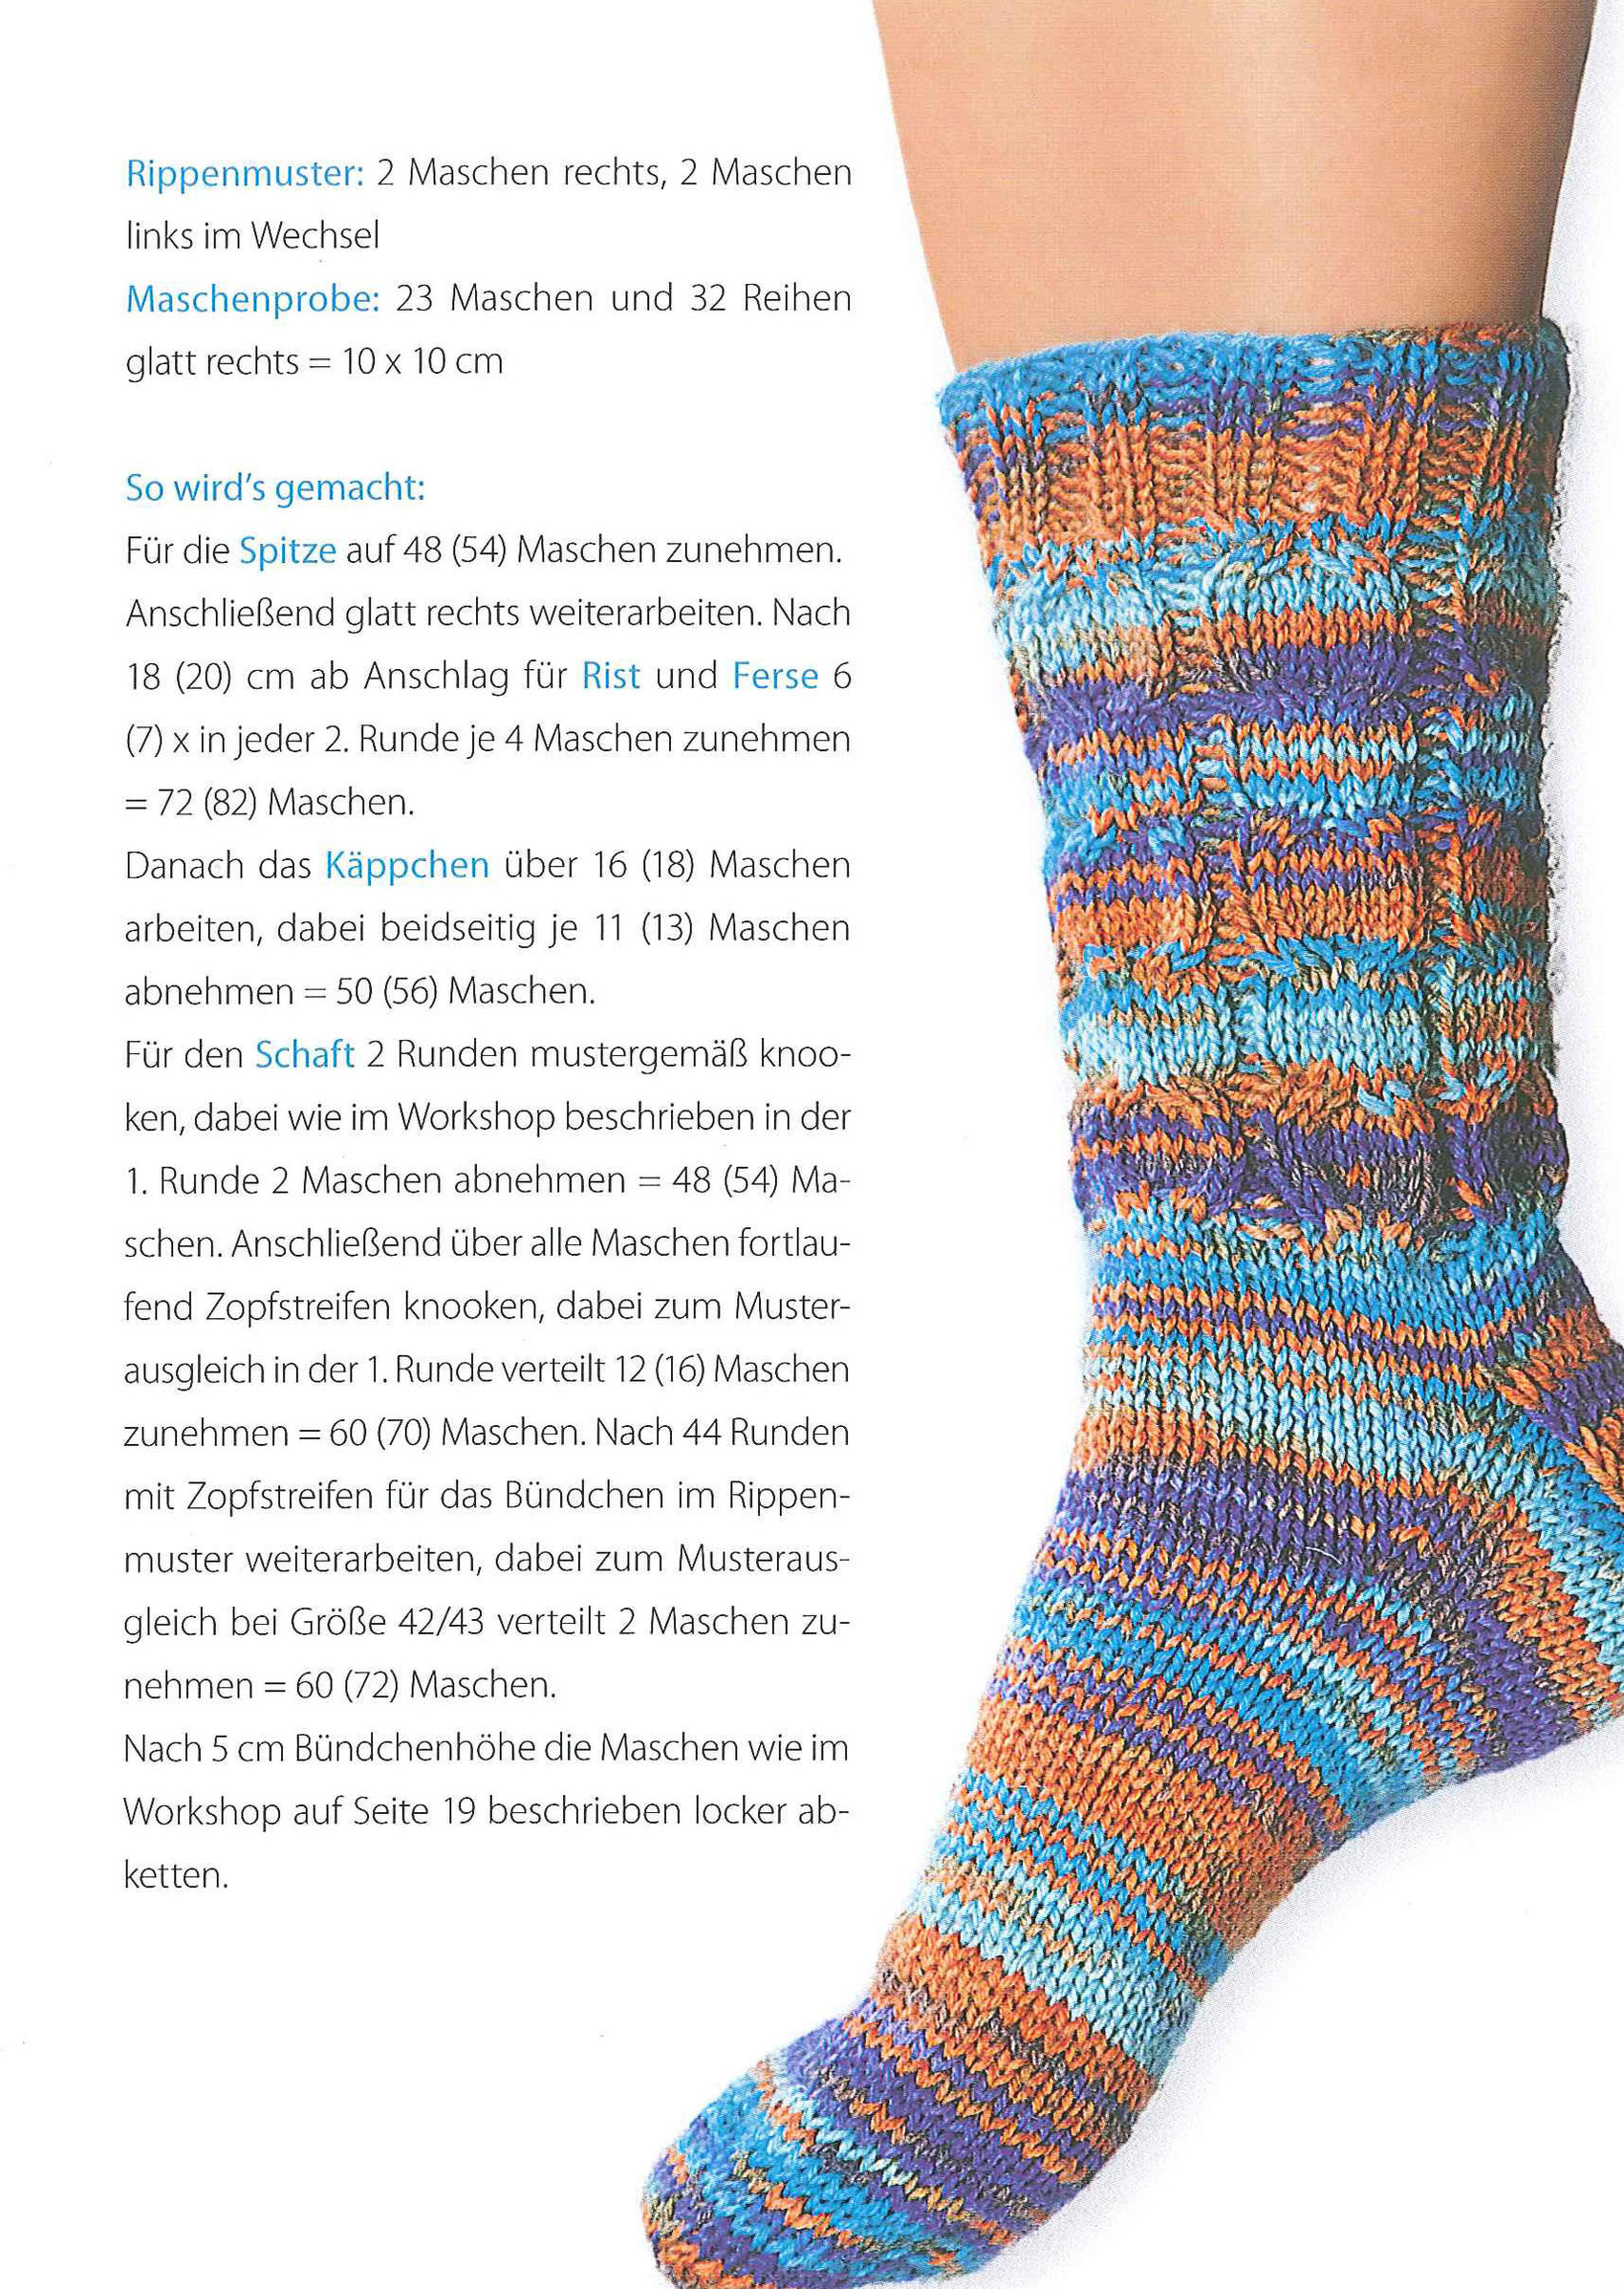 Die Knooking-Socke Buch von Veronika Hug versandkostenfrei - Weltbild.de